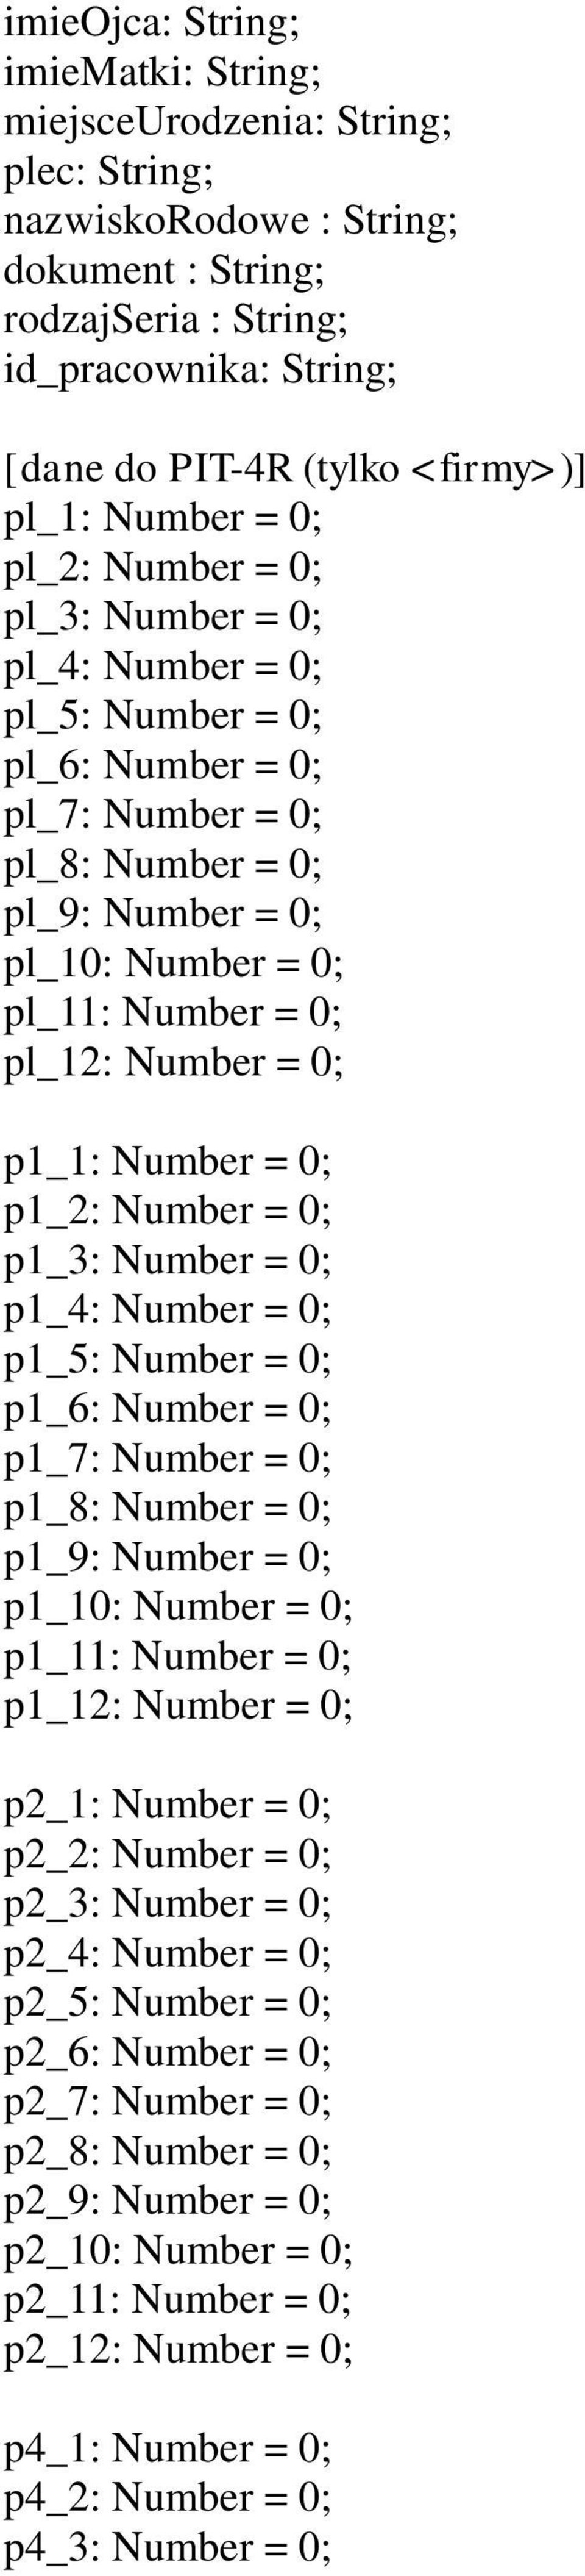 pl_12: Number = 0; p1_1: Number = 0; p1_2: Number = 0; p1_3: Number = 0; p1_4: Number = 0; p1_5: Number = 0; p1_6: Number = 0; p1_7: Number = 0; p1_8: Number = 0; p1_9: Number = 0; p1_10: Number = 0;